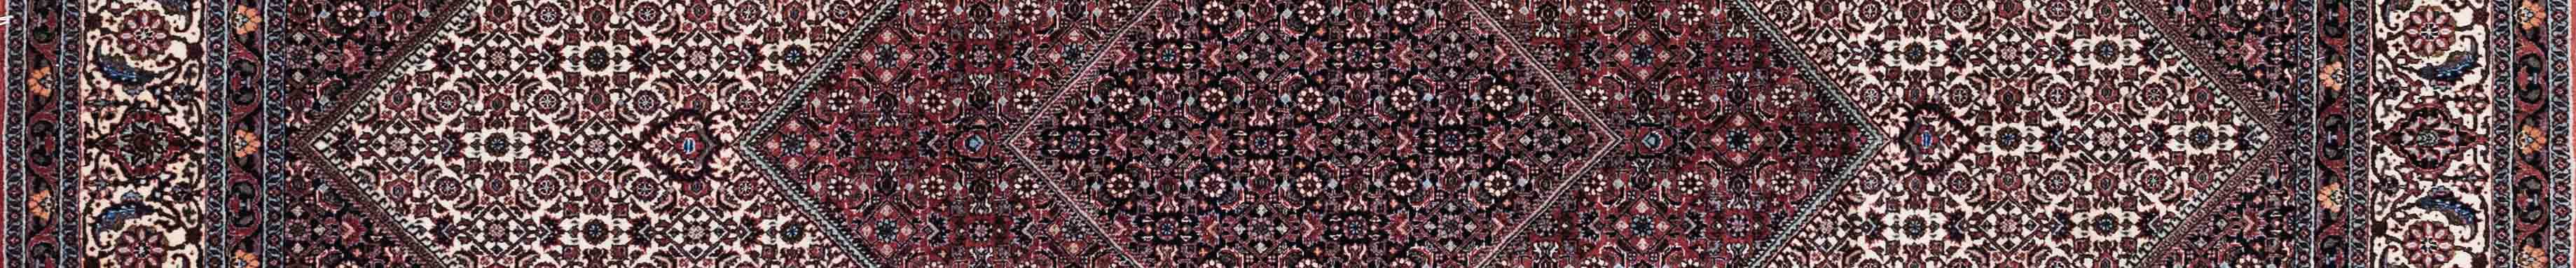 Bidjar Persian Carpet Rug N1Carpet Canada Montreal Tapis Persan 5950